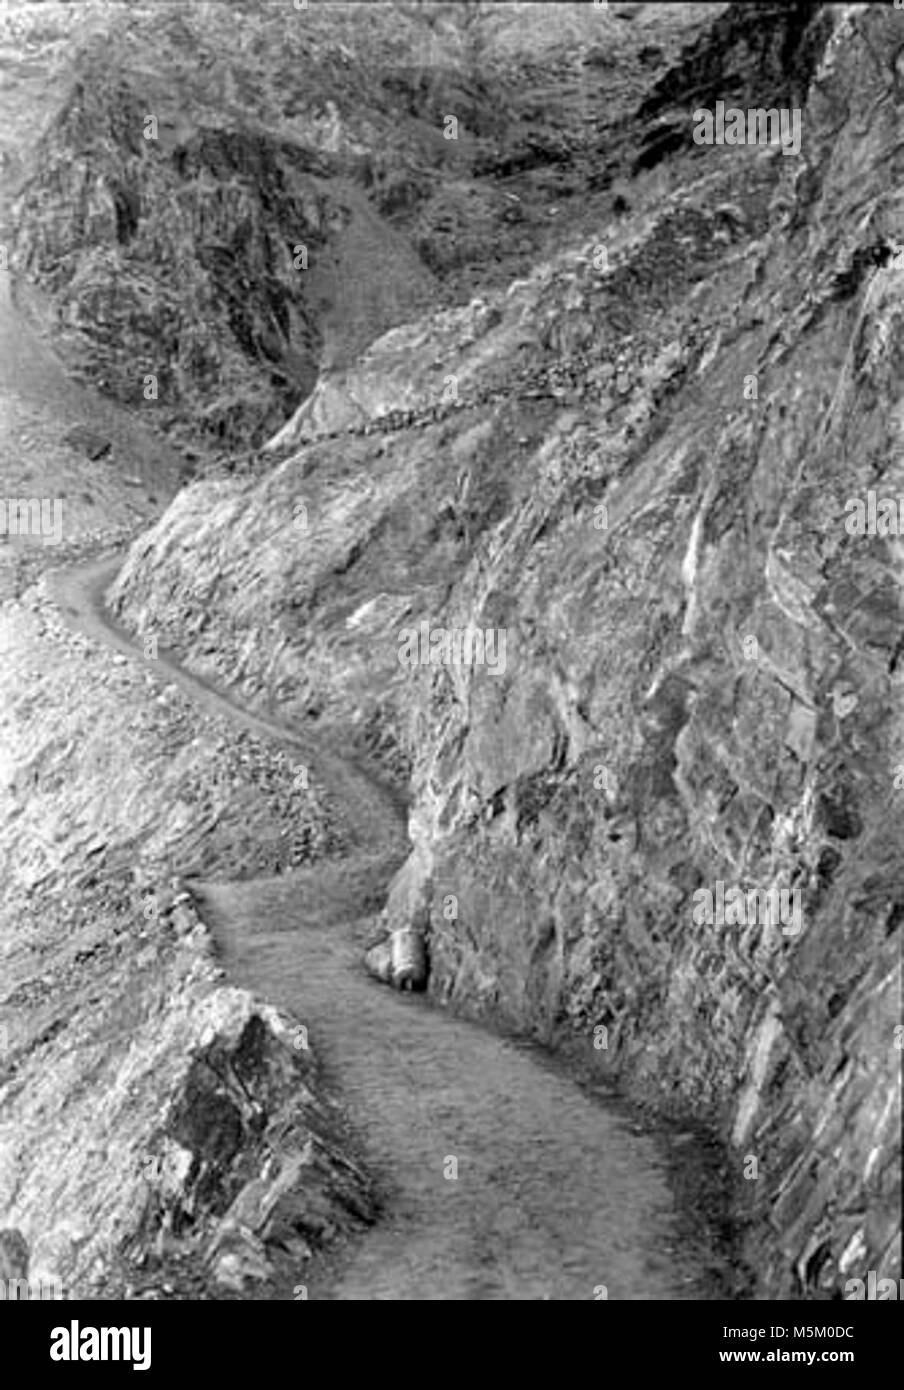 Grand Canyon historischen River Trail Bau. c. Schnittpunkt der South Kaibab & RIVER TRAILS KURZ NACH FERTIGSTELLUNG VON CCC. 21. Dez. 1935. Stockfoto